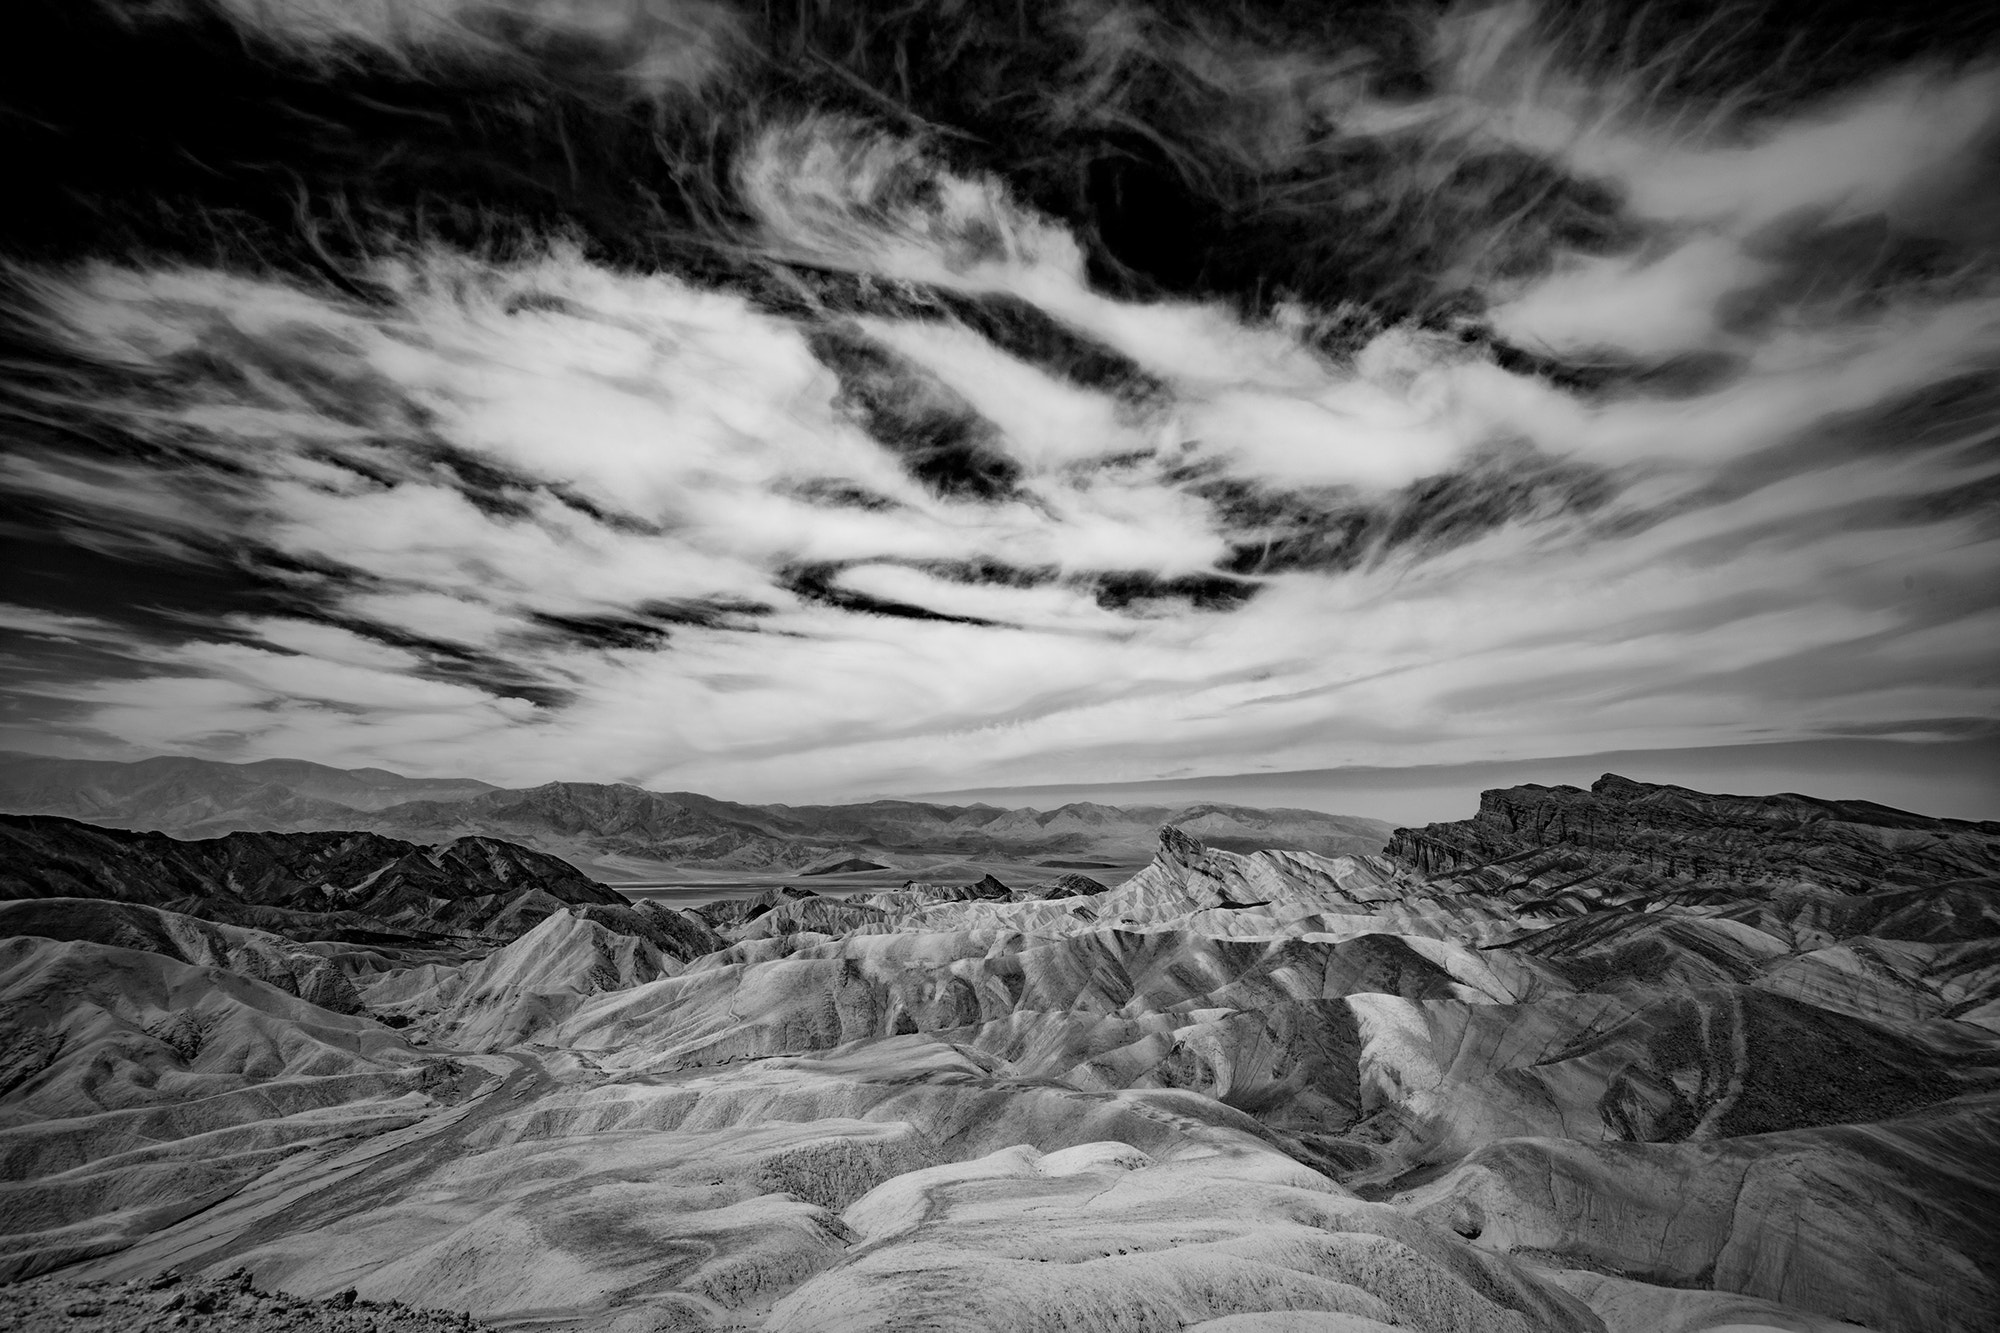 Sony a7 + Sony E 10-18mm F4 OSS sample photo. Desert sky and terrain photography